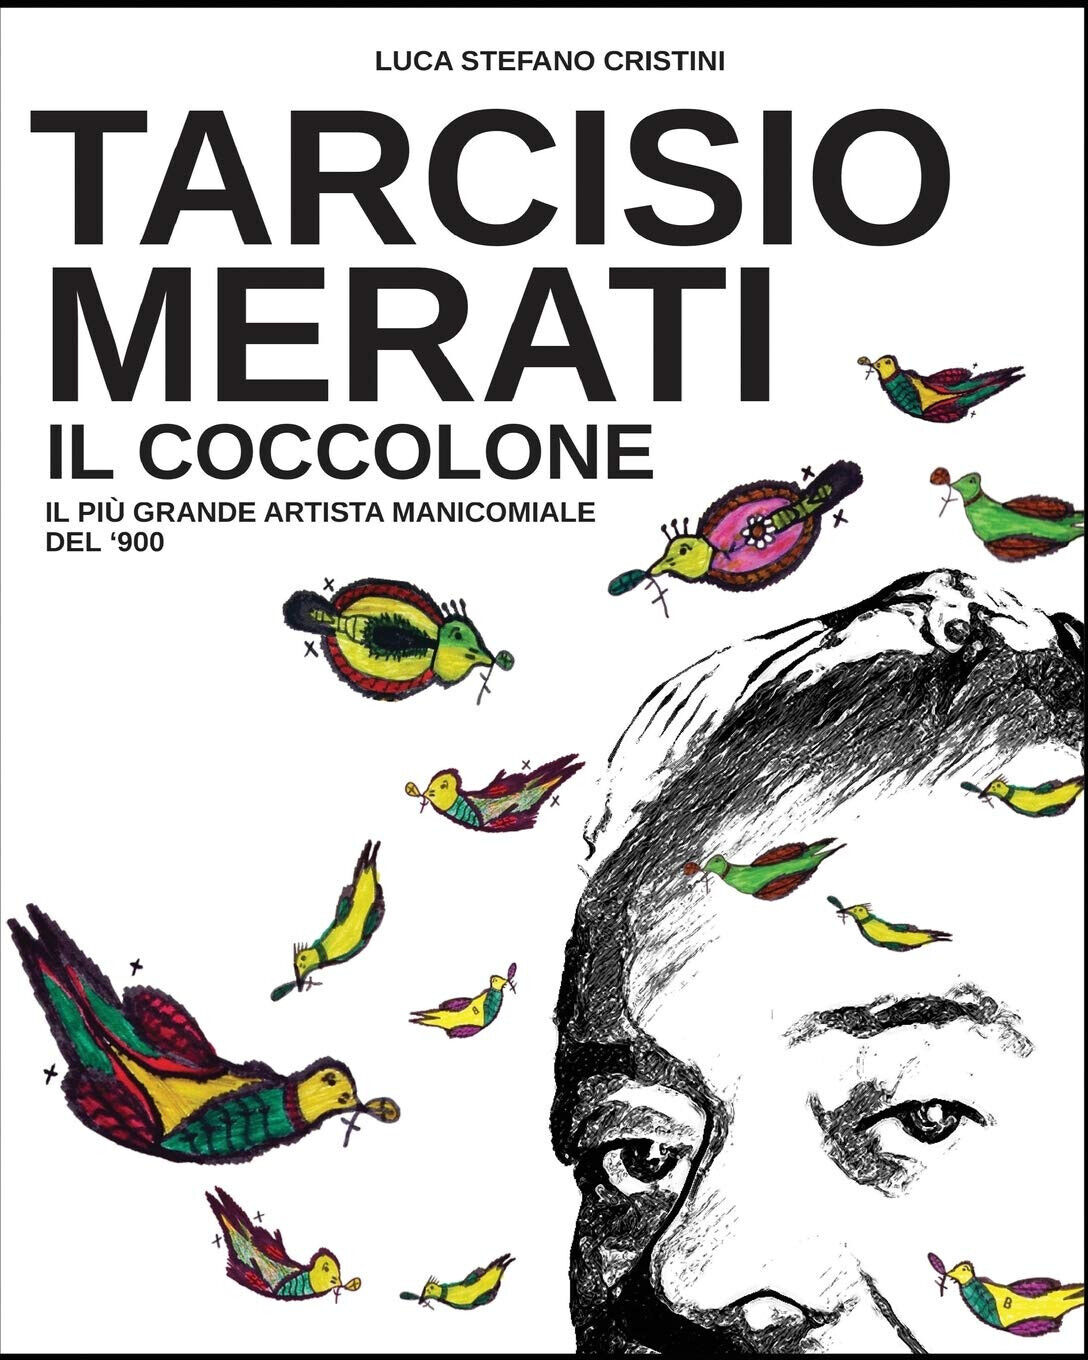 Tarcisio Merati il Coccolone - Luca Cristini - 2018